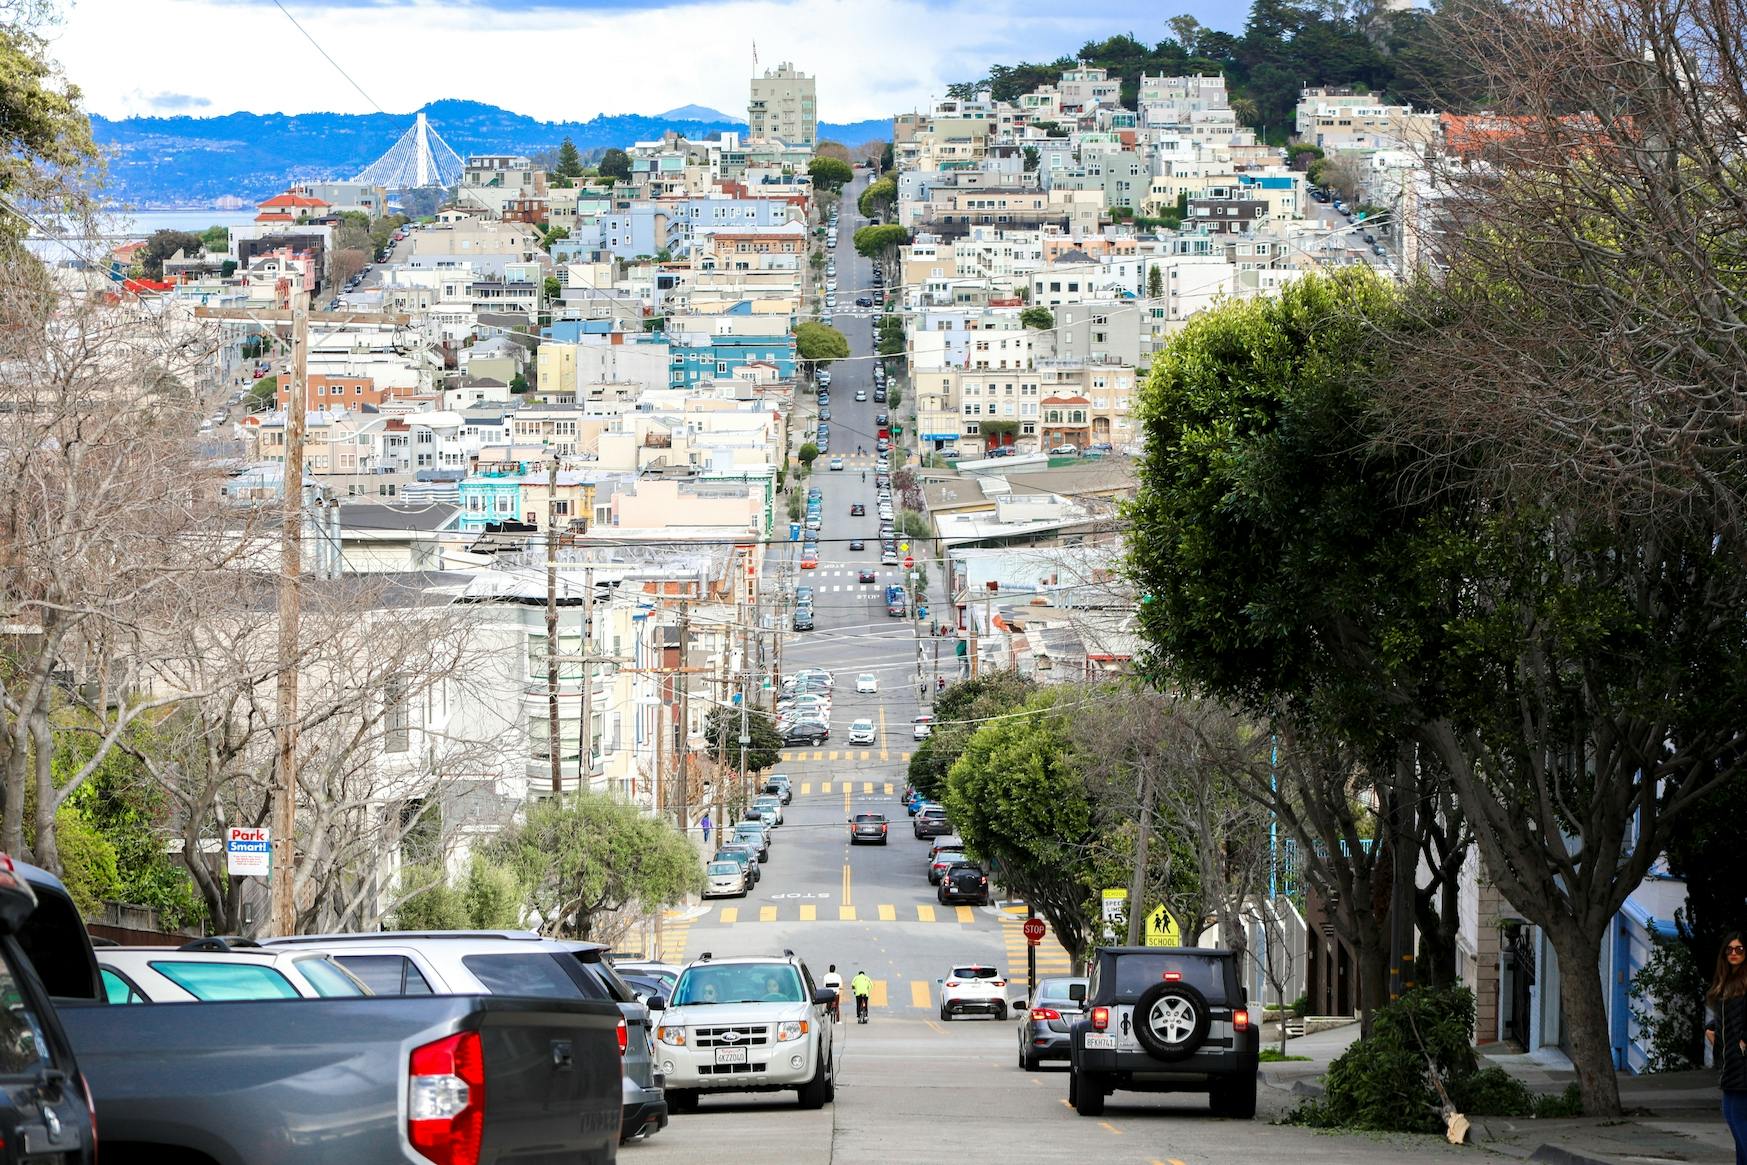 Visite guidée du meilleur de San Francisco en vélo électrique